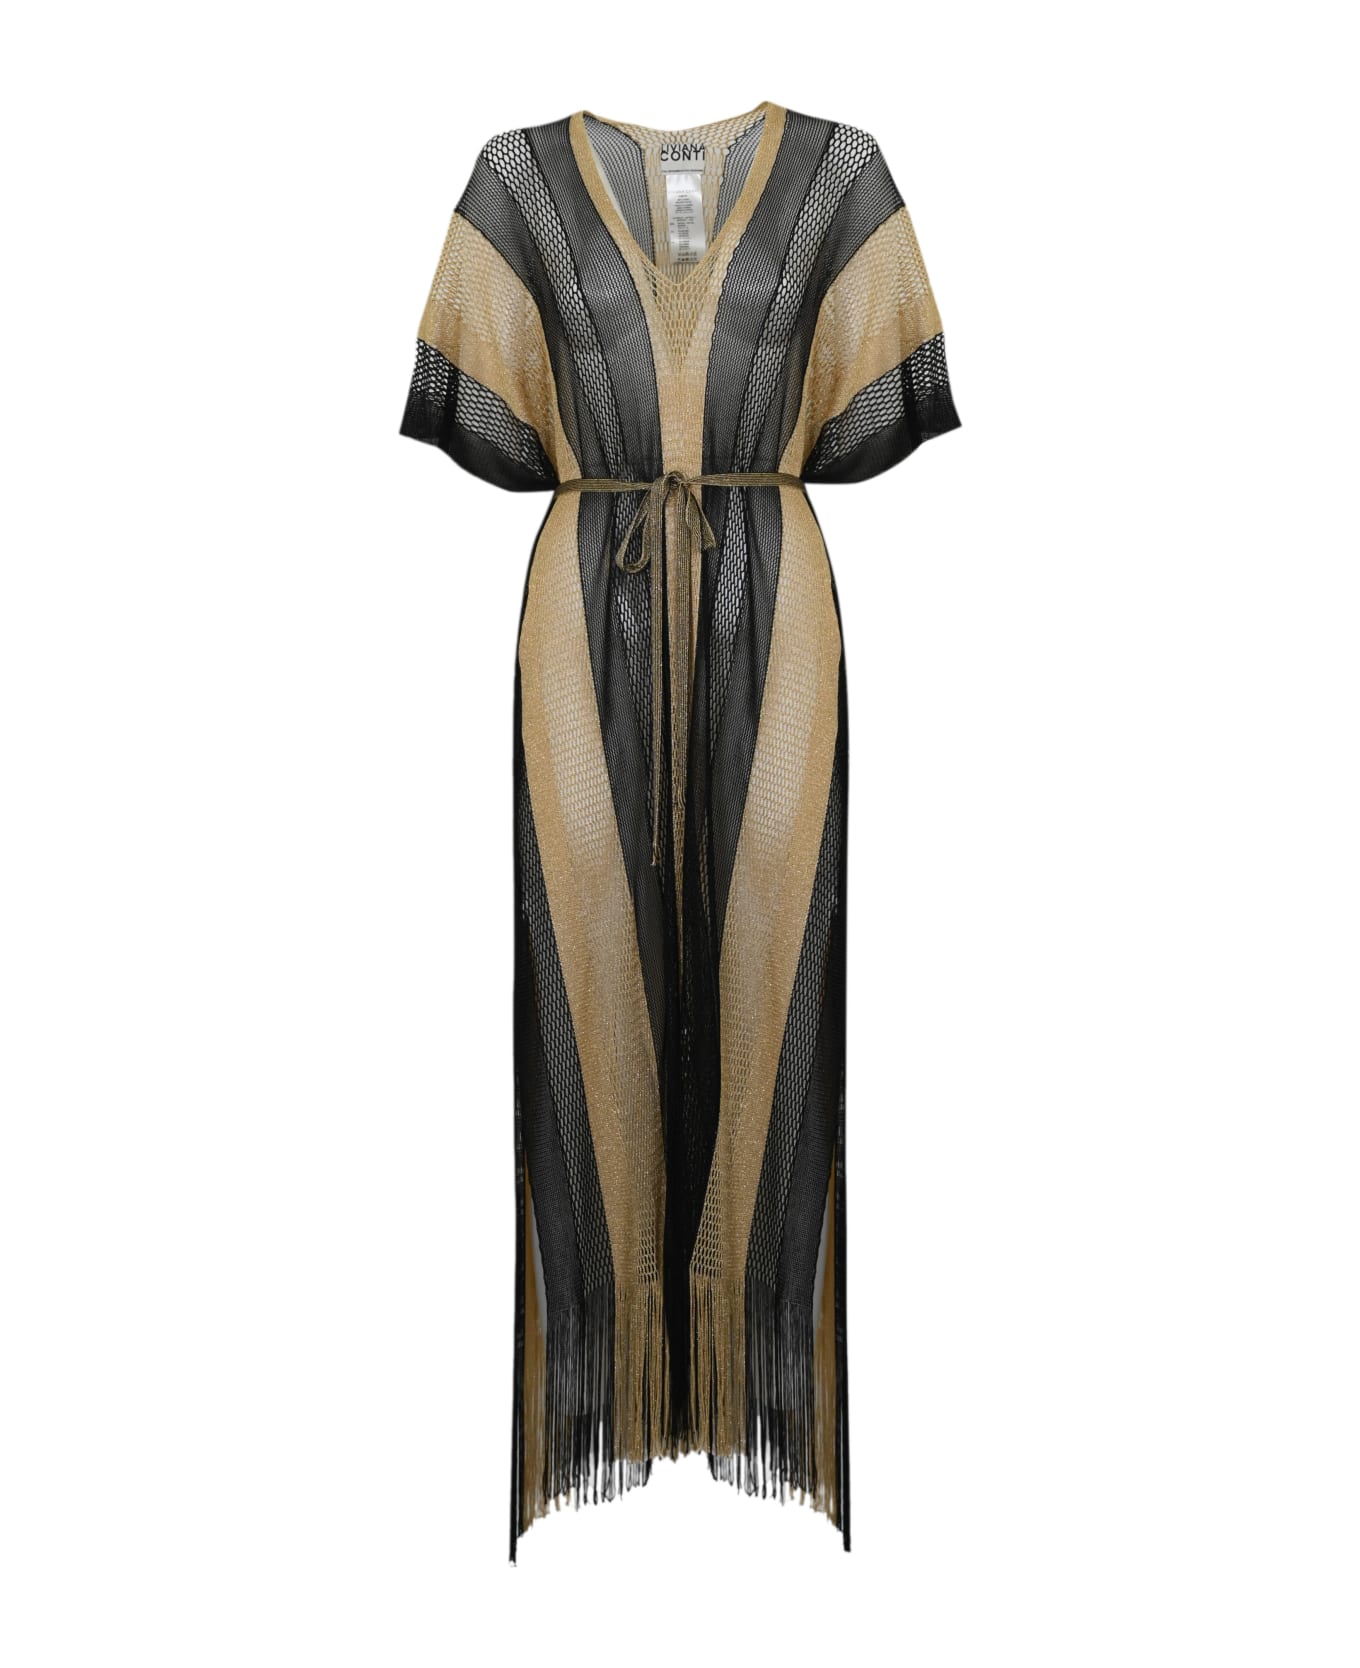 Liviana Conti Gold Black Mesh Beach Dress - Nero/oro